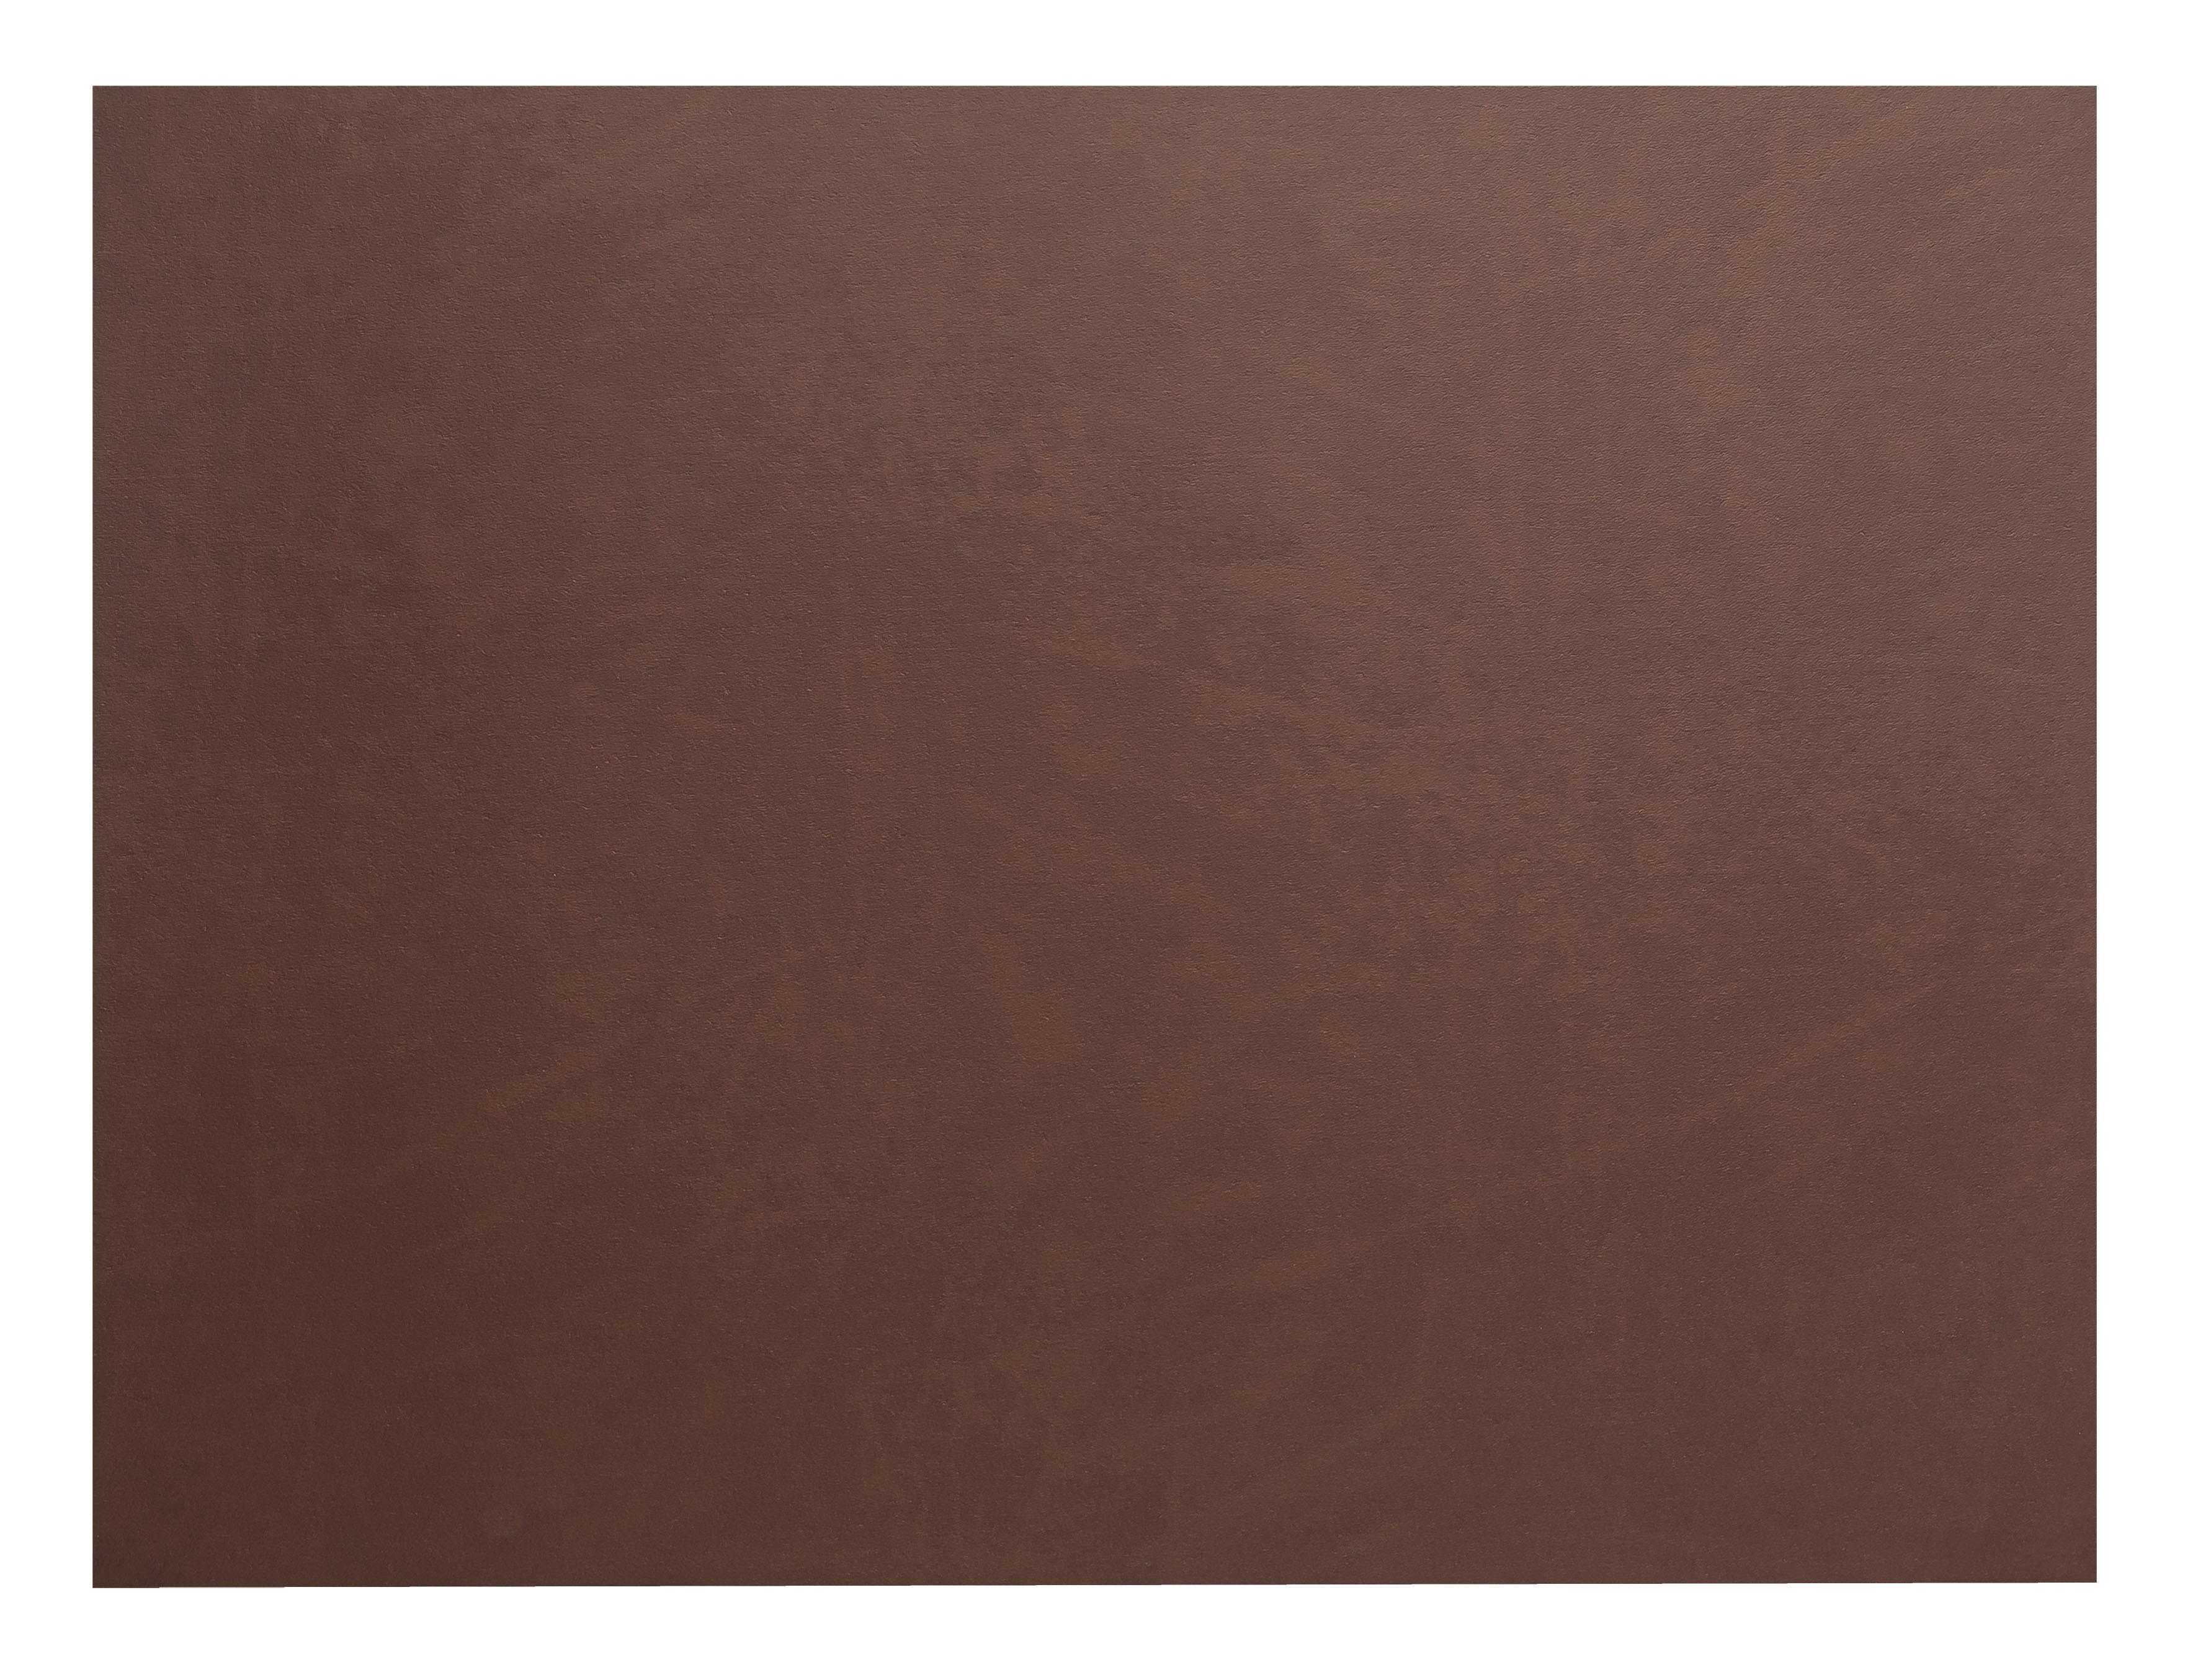 45x30 см, 100 % переработанная кожа, декор brown / коричневый